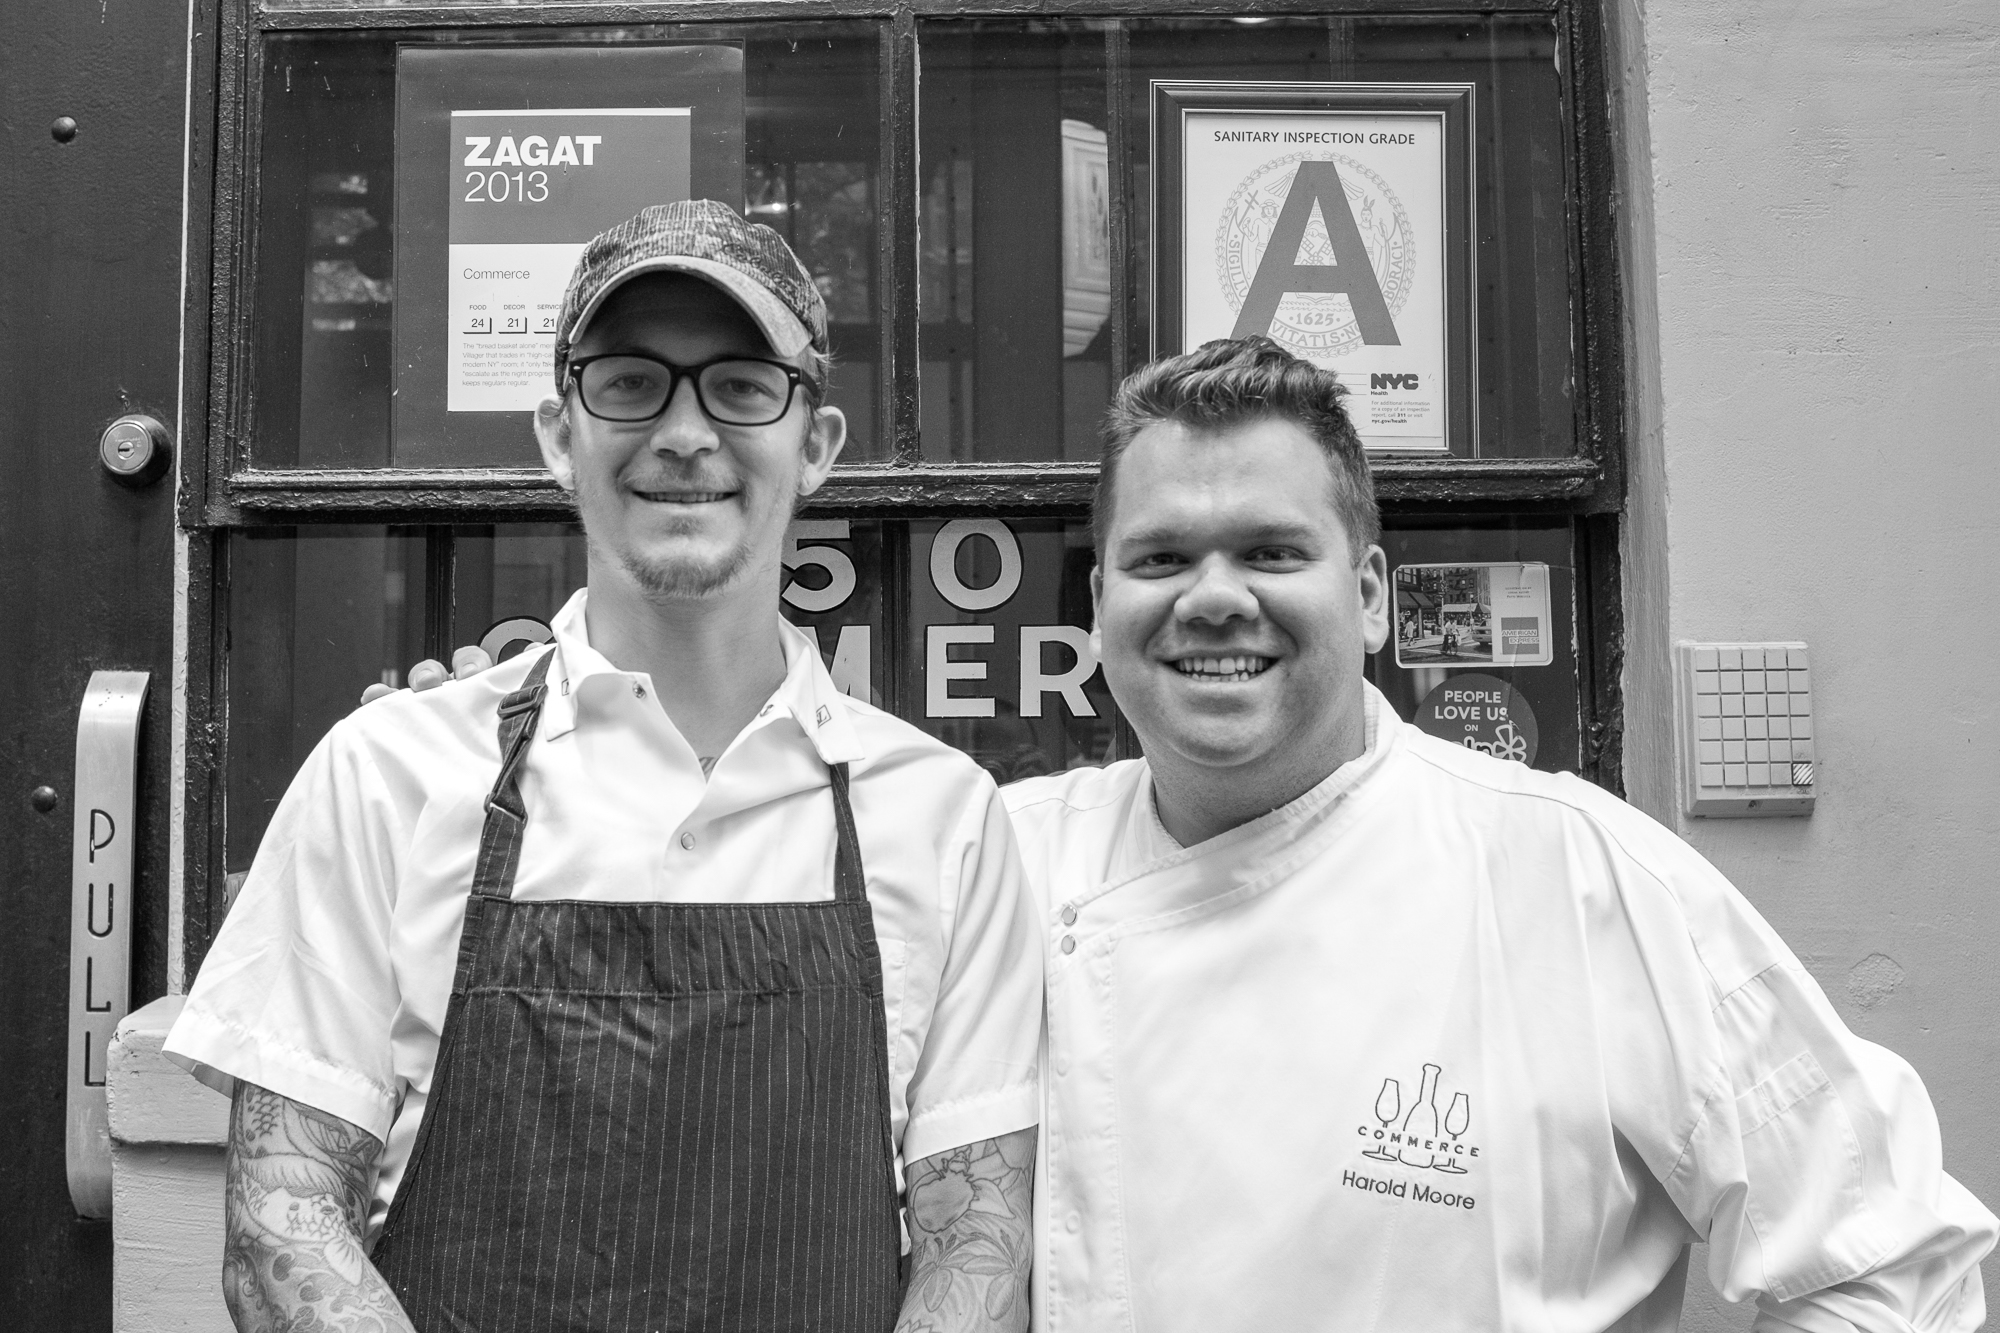 Commerce chef de cuisine Carsten Johannsen and chef/owner Harold Moore.